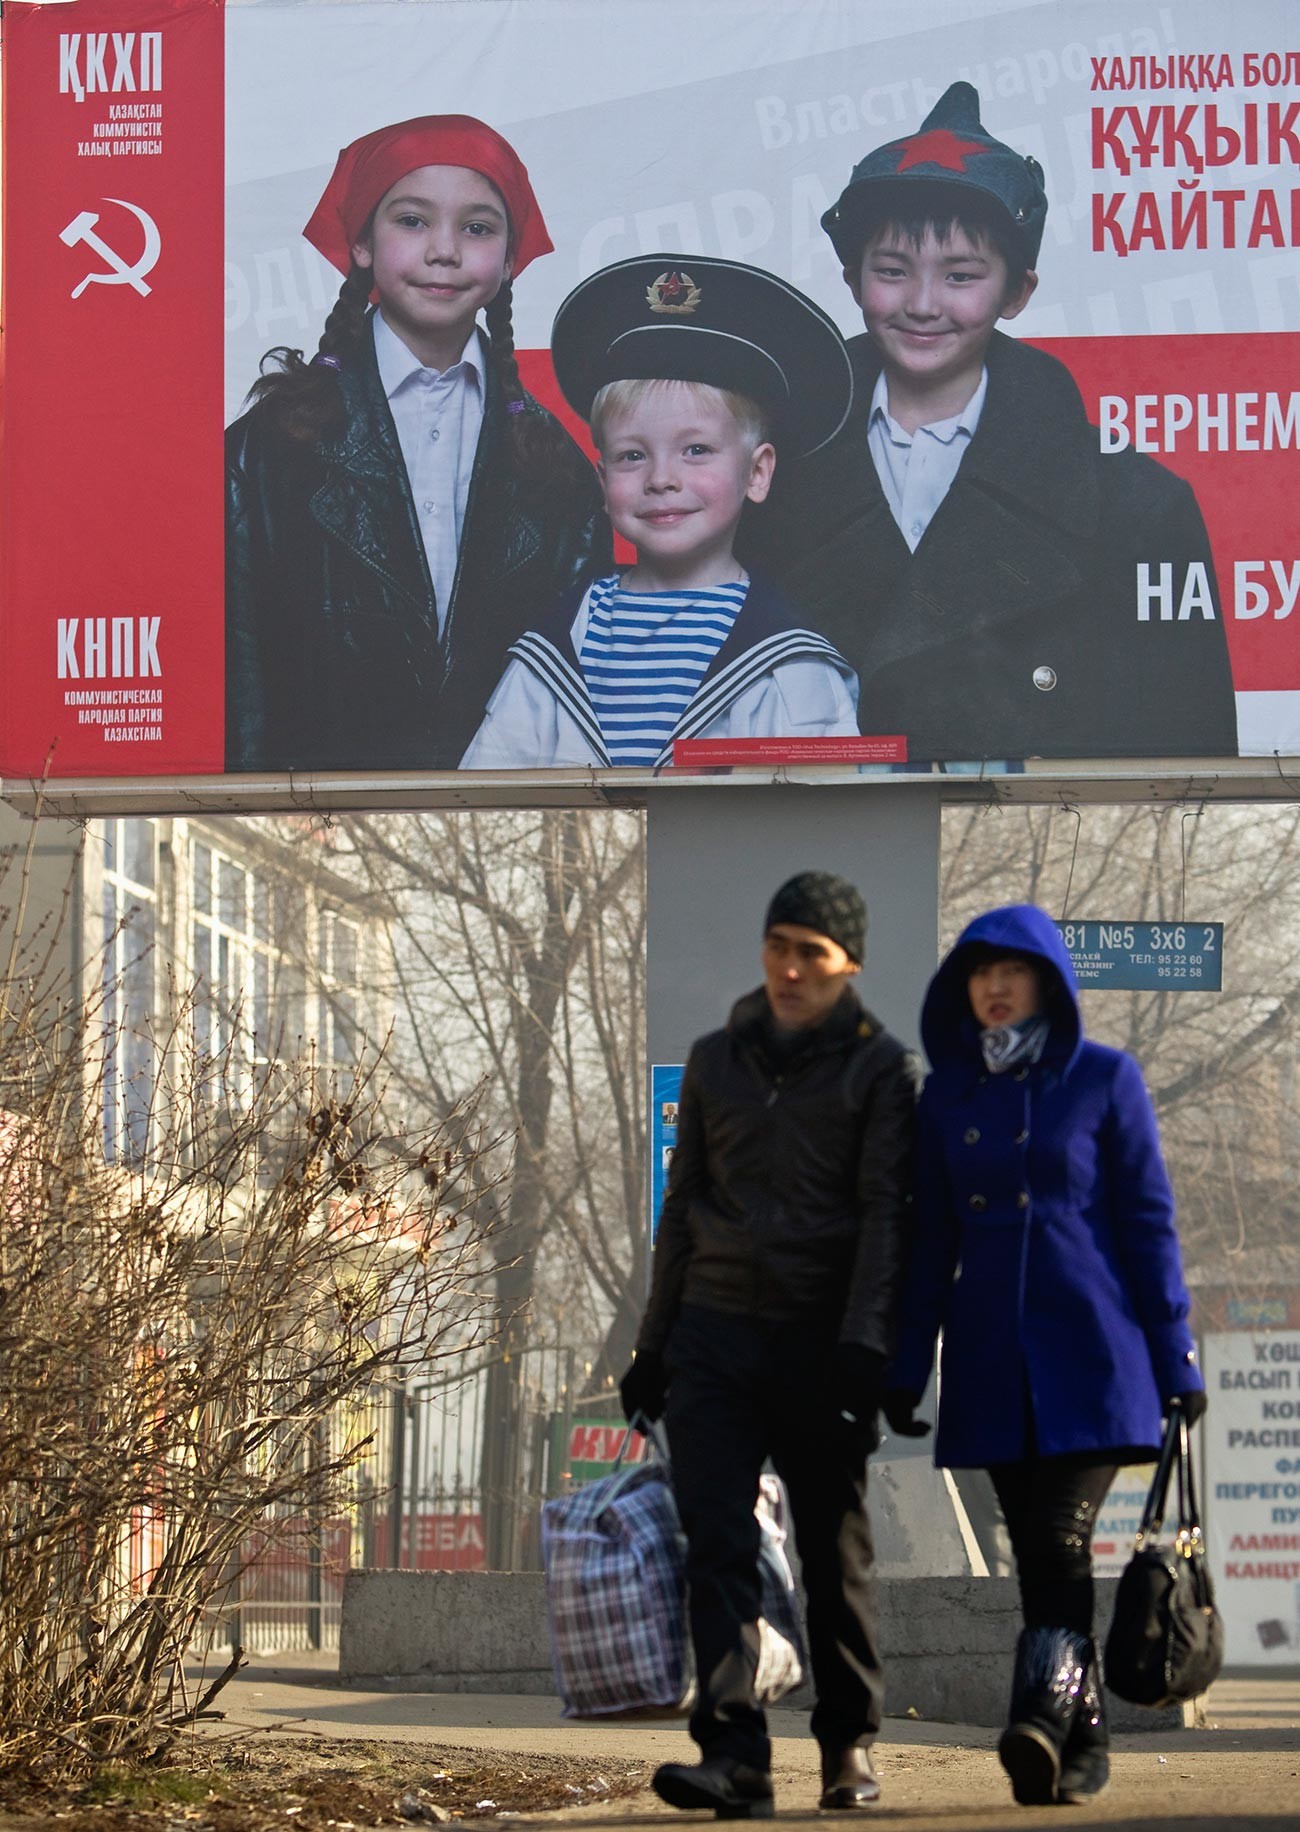 Orang-orang melewati poster pemilu Partai Rakyat Komunis Kazakhstan (QKHP) di Almaty.